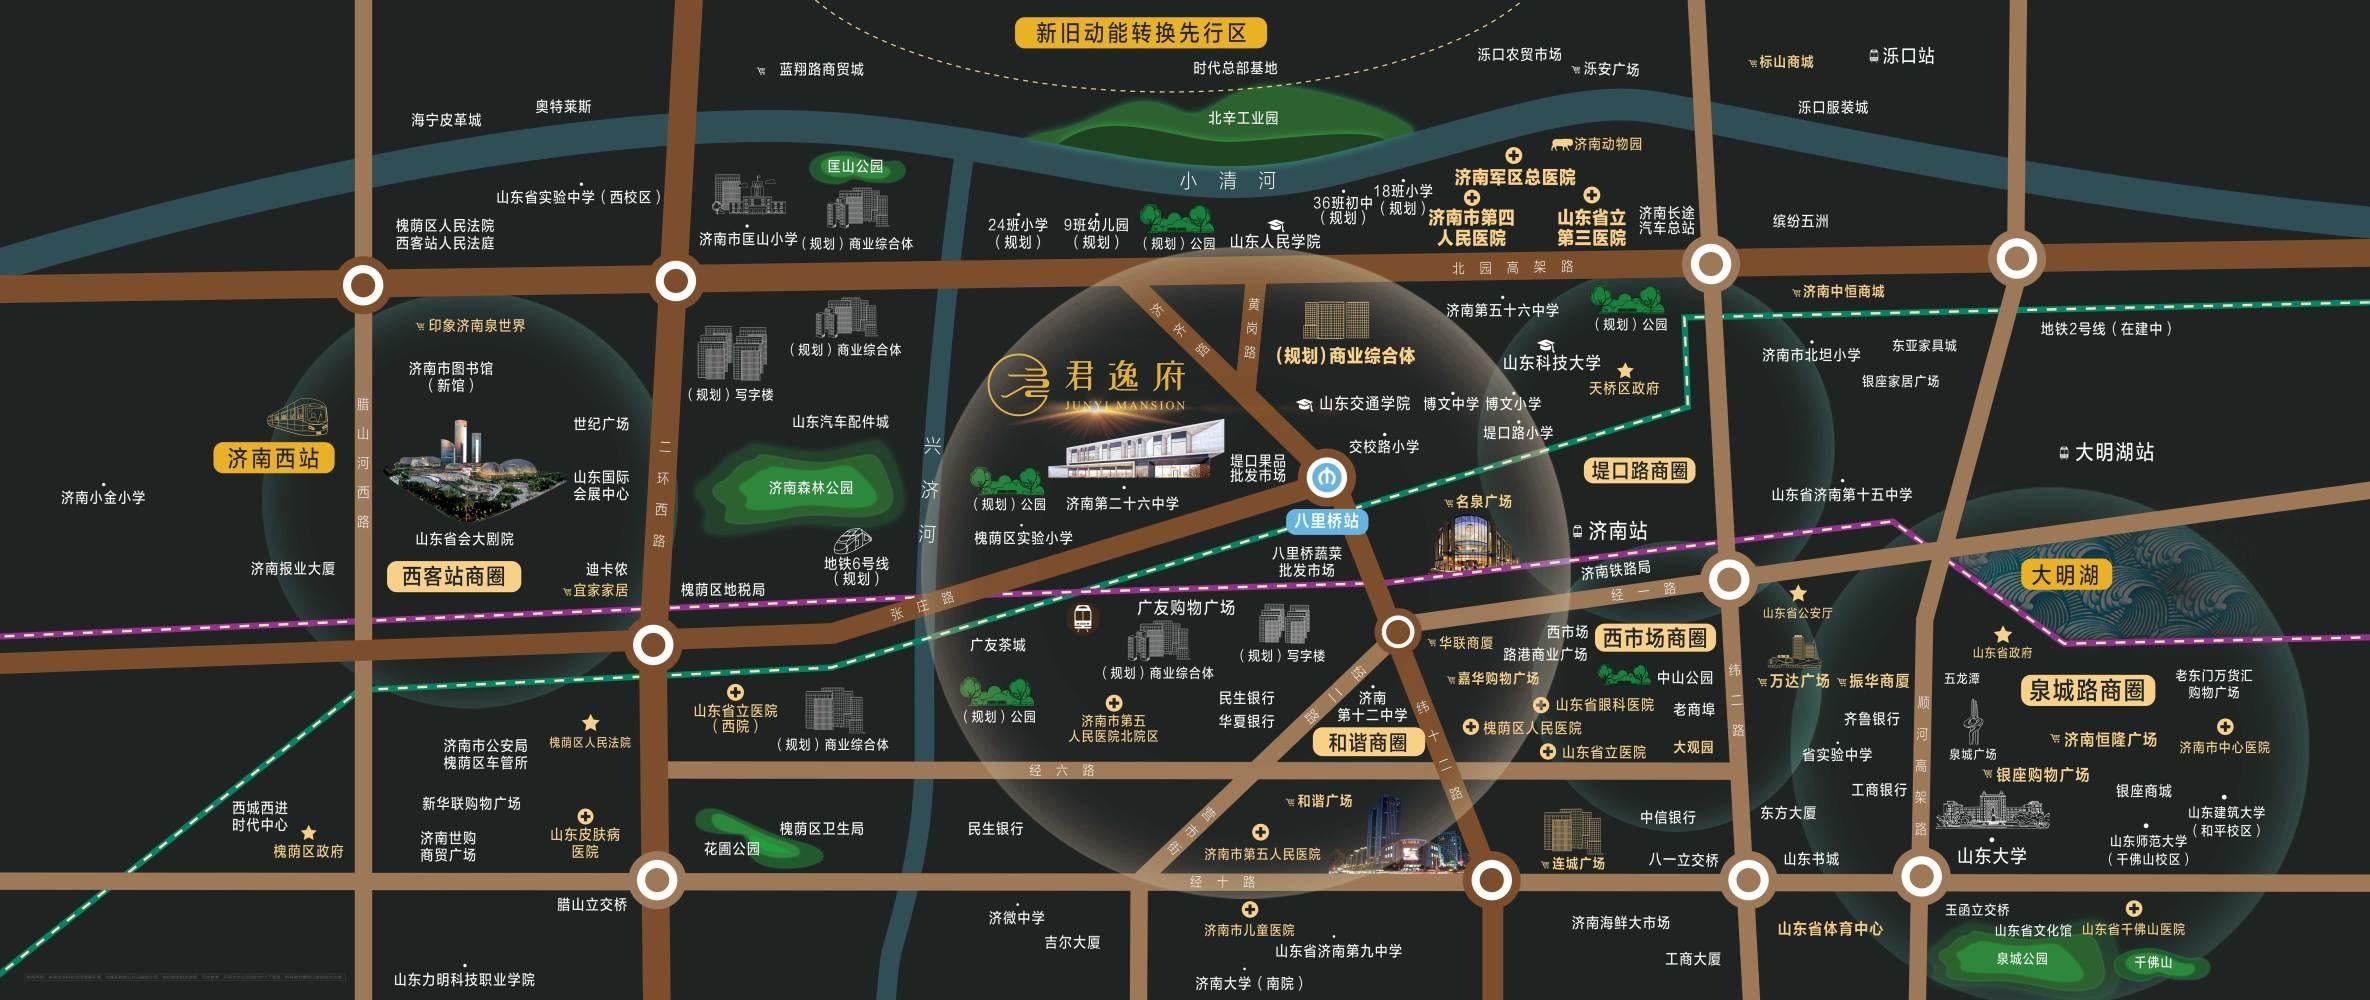 济南西部地铁房优质商圈